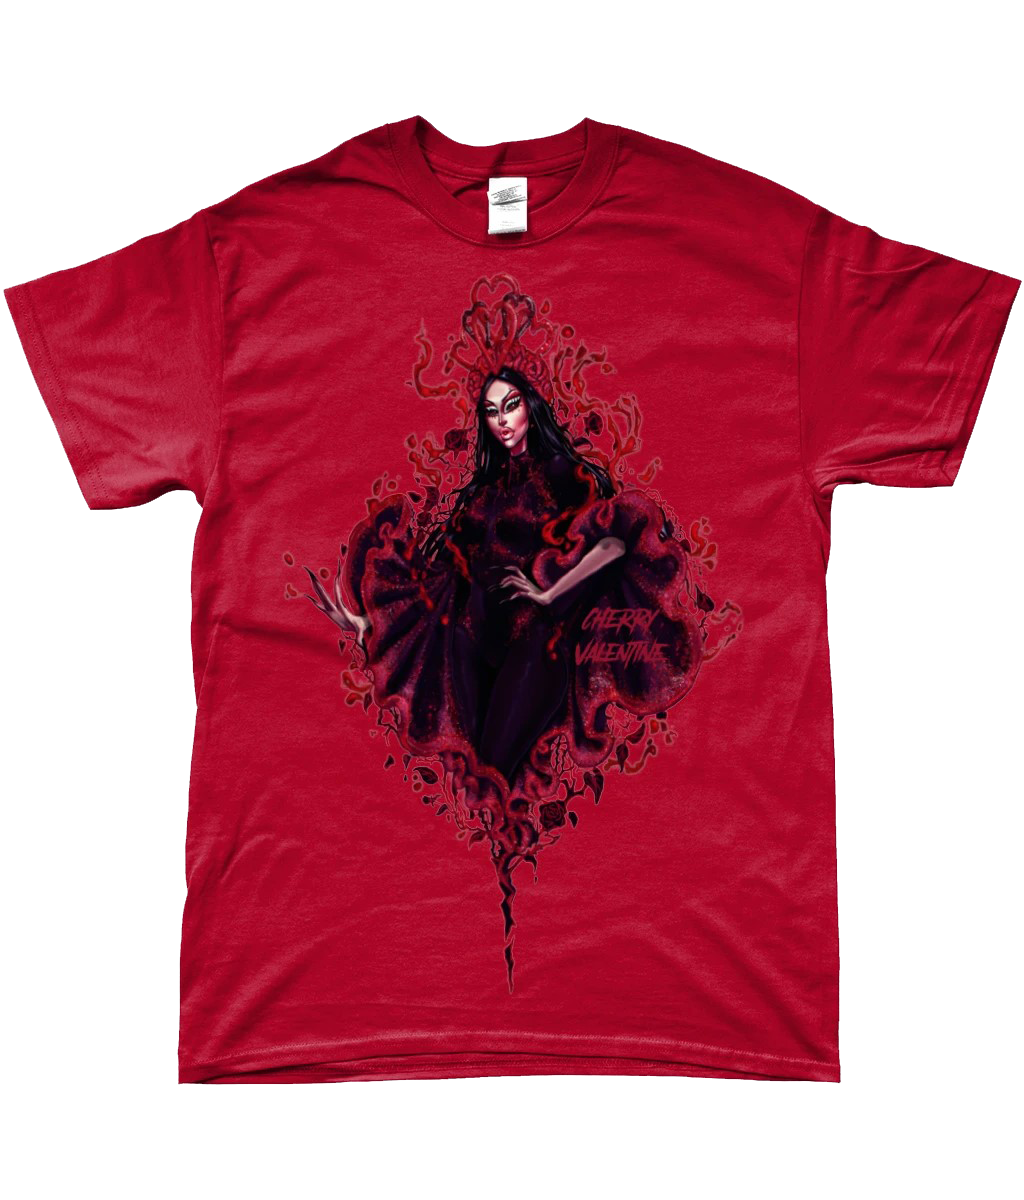 Cherry Valentine - First Love T-Shirt